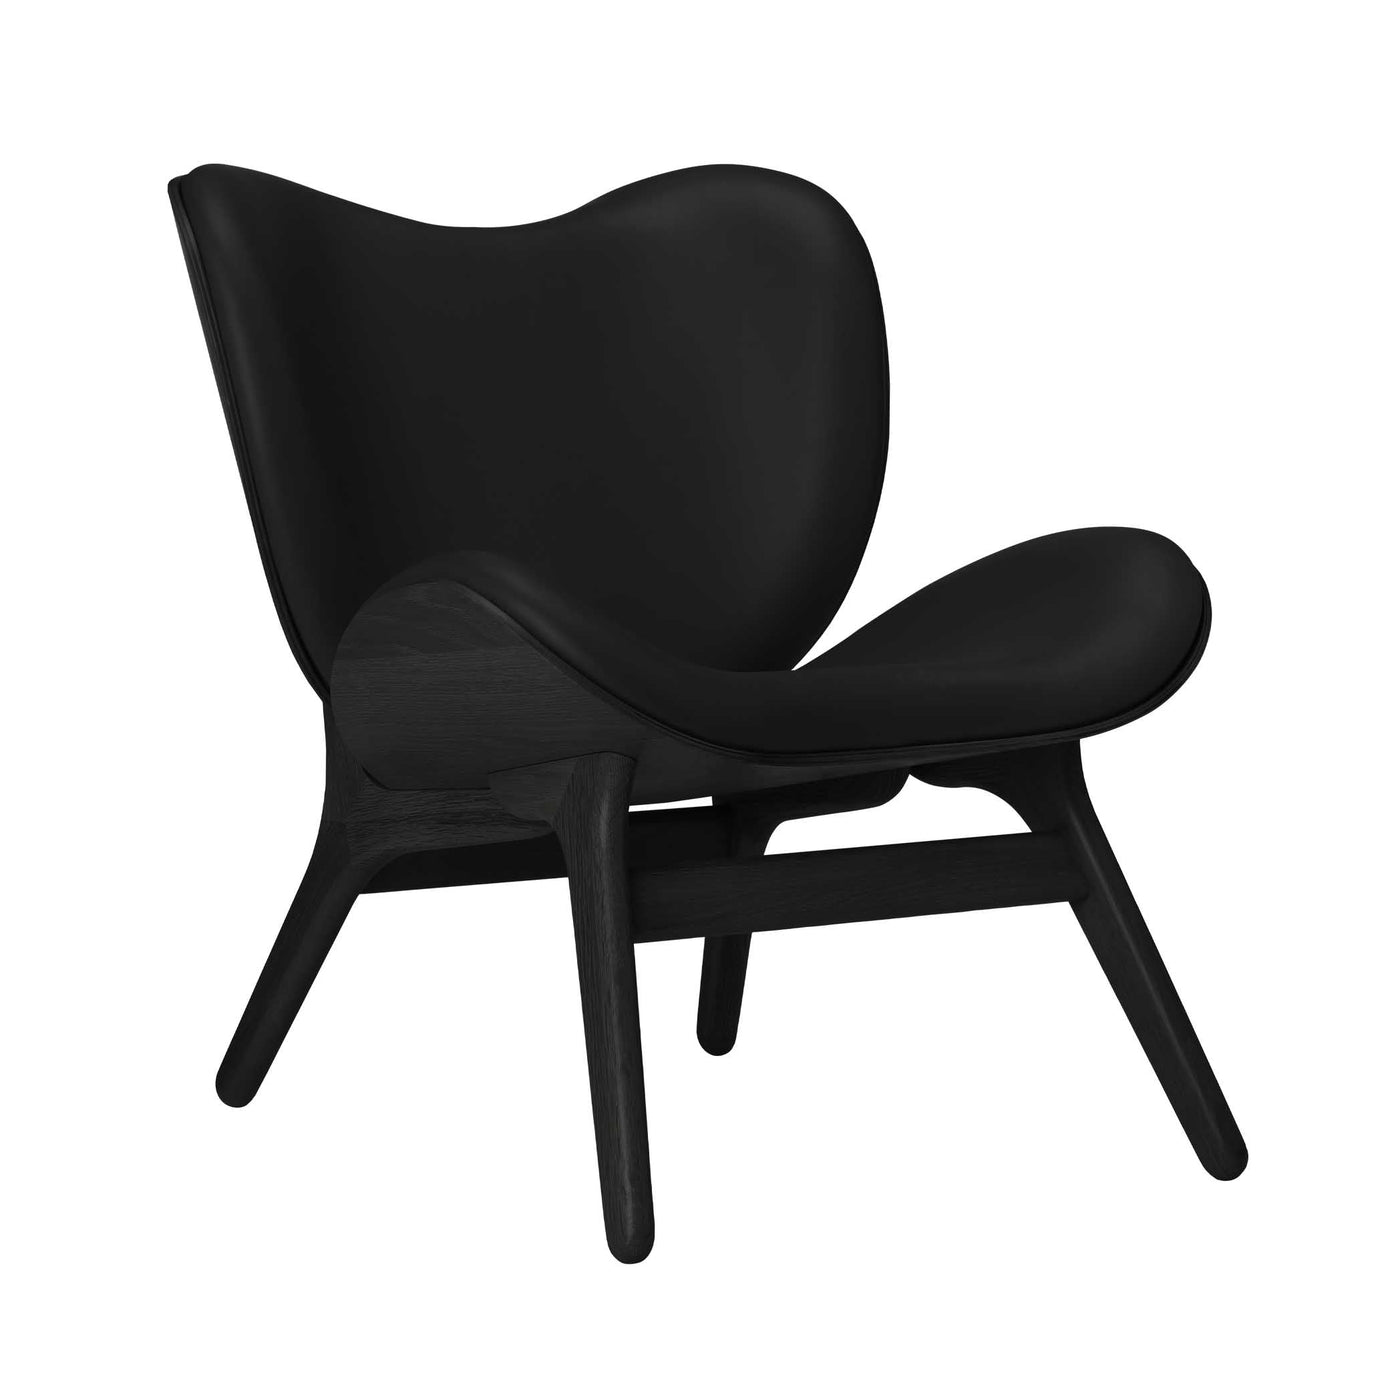 Umage A Conversation Piece Low, fauteuil confortable avec dossier bas, en bois et tissu, chêne noir, cuir noir